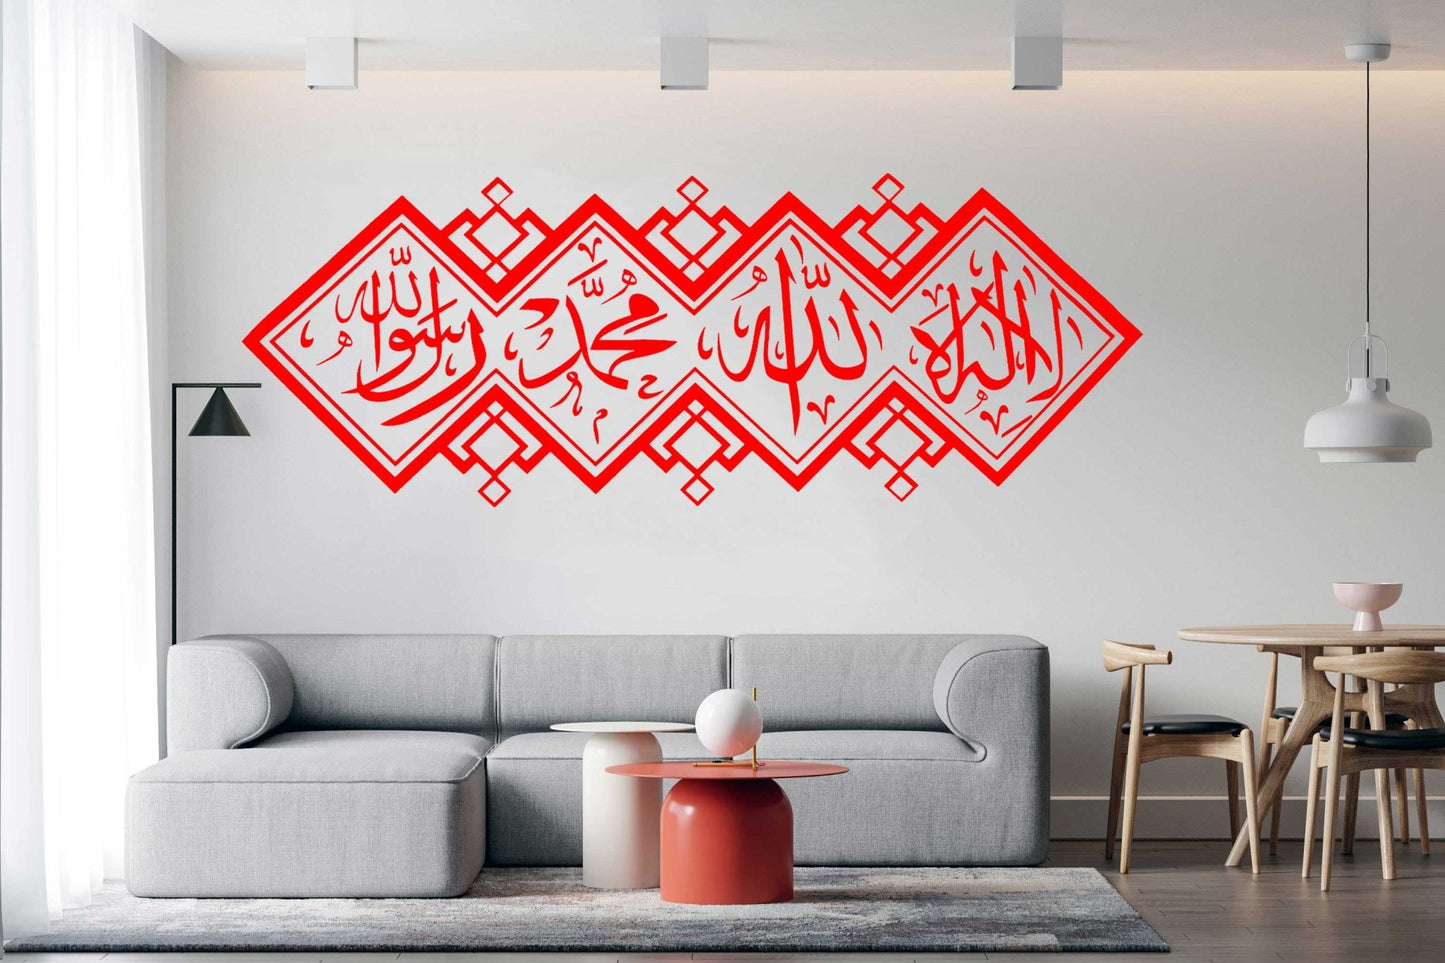 Autocollant calligraphie marocaine - Décoration Oriental